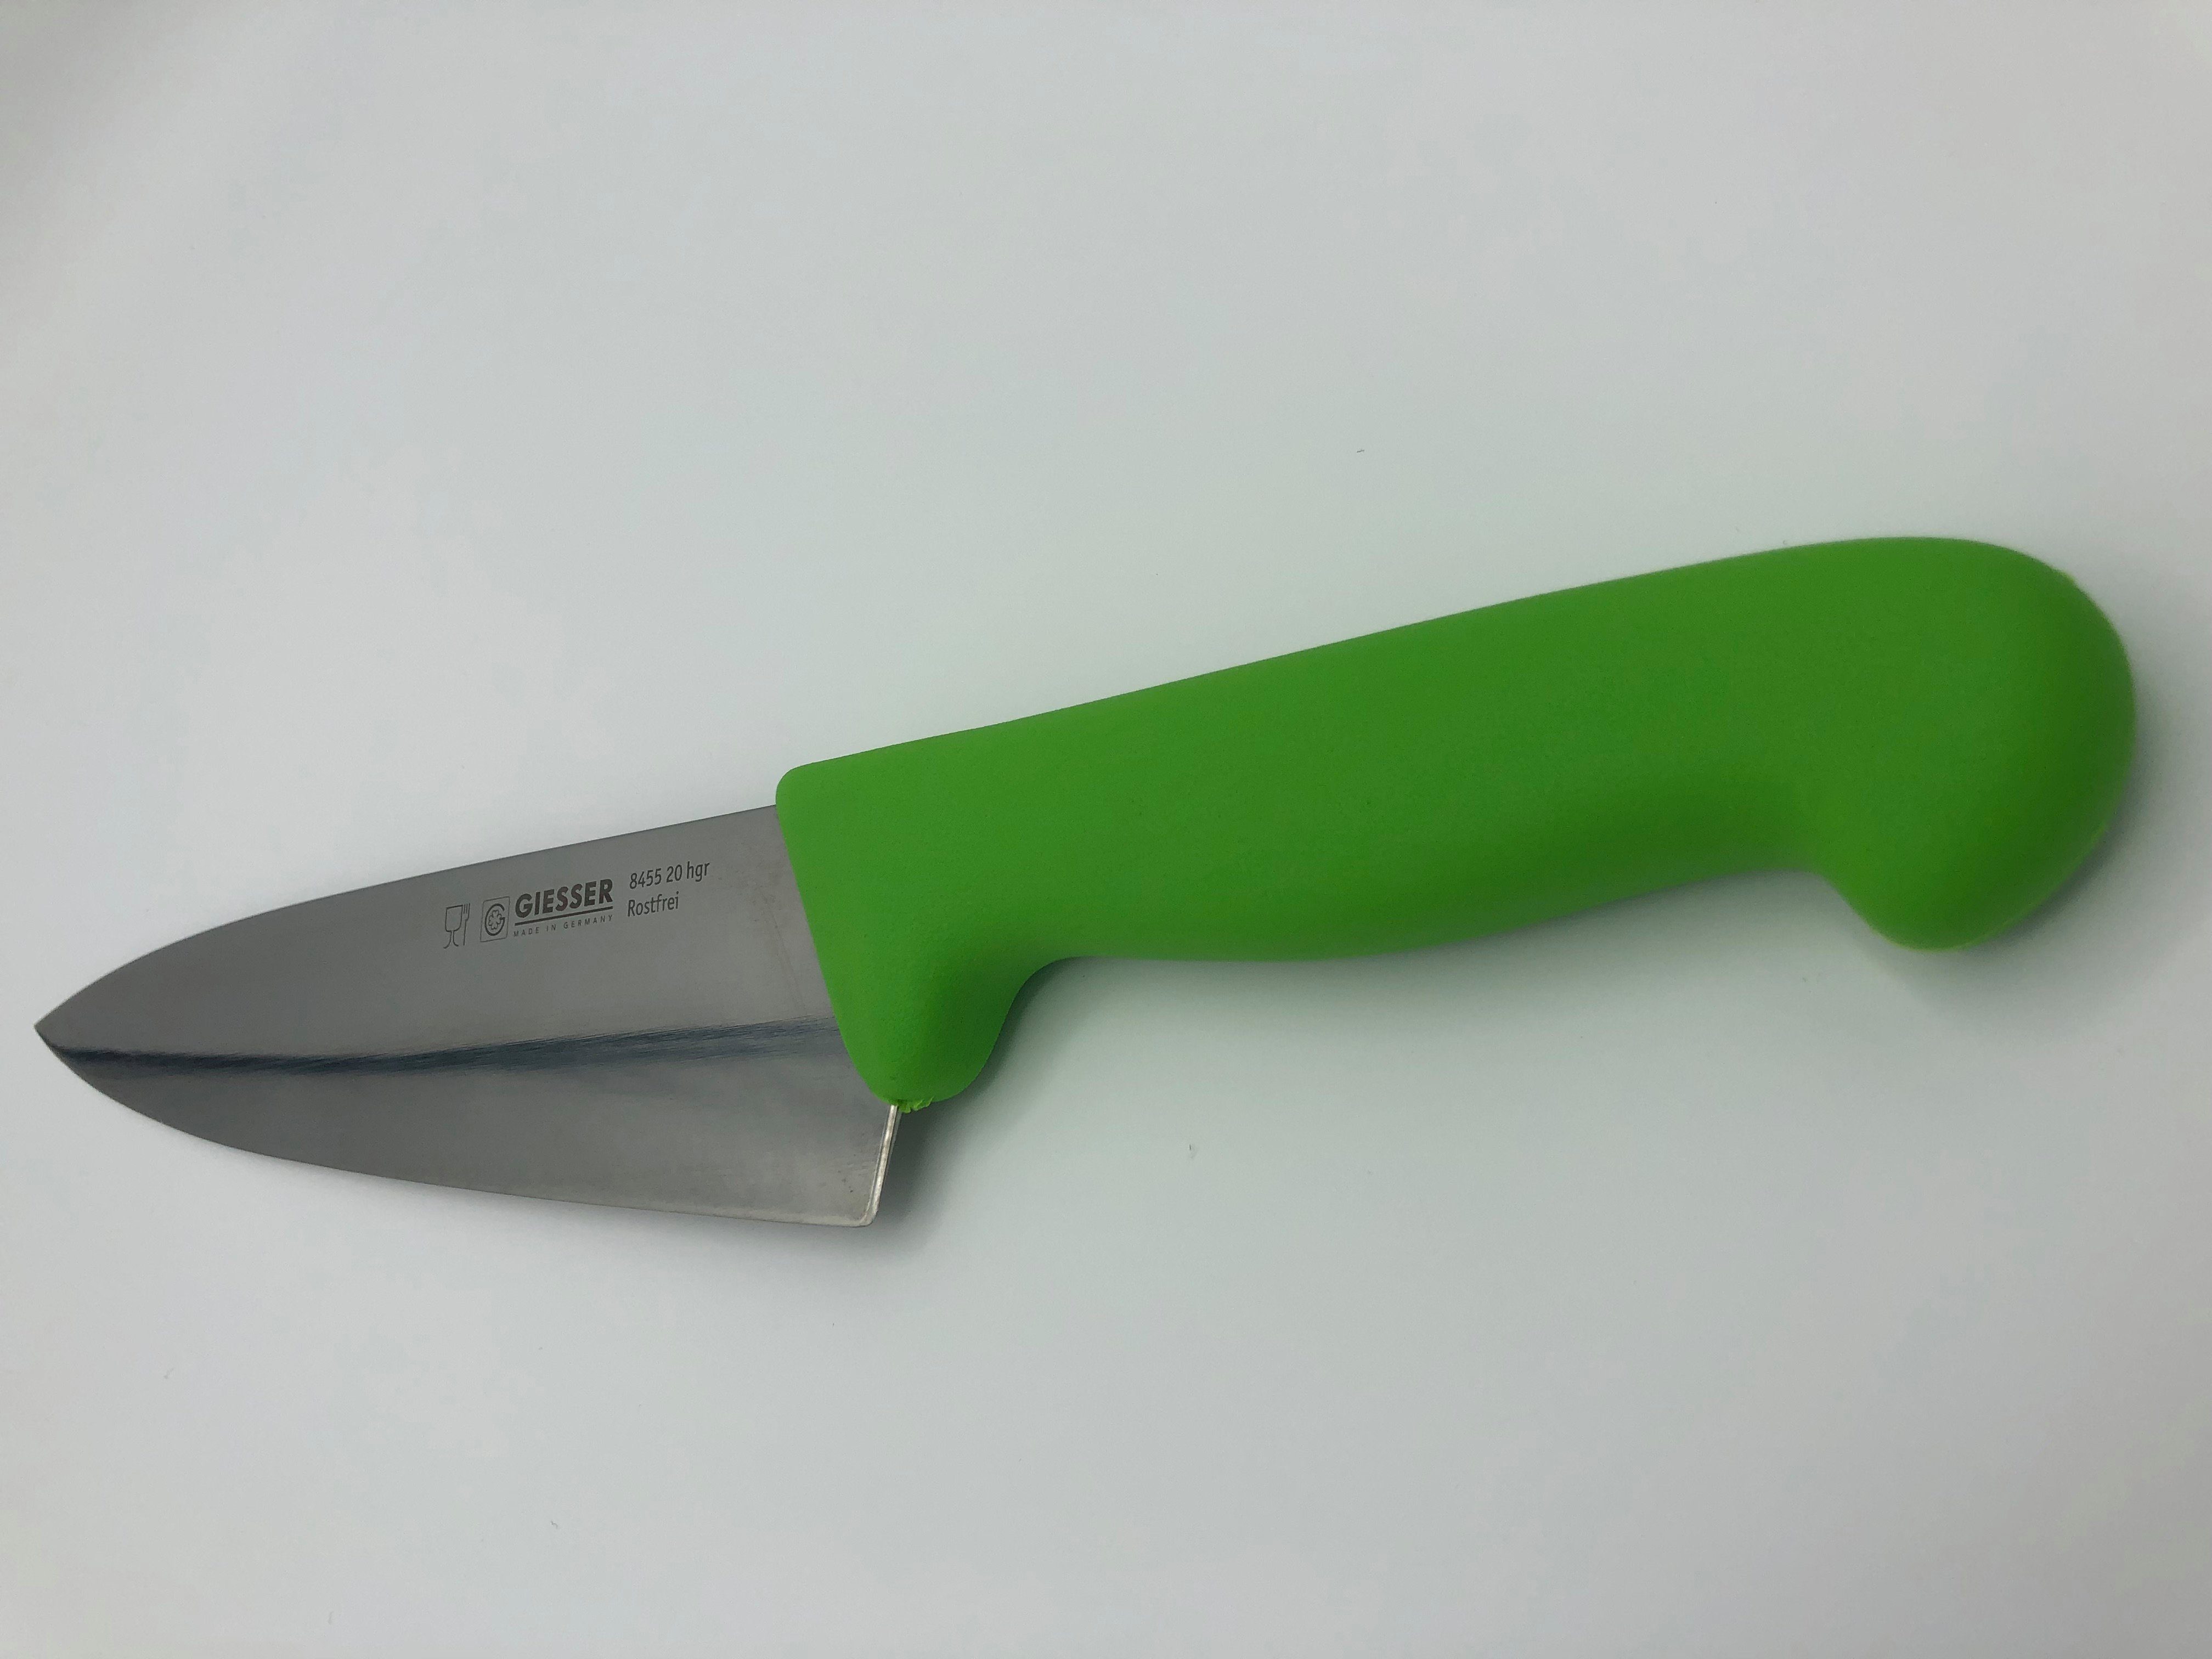 Messer scharf, 8455, Ideal Handabzug, Küchenmesser Kochmesser für hellgrün Küche breite breit Form, Rostfrei, jede Giesser